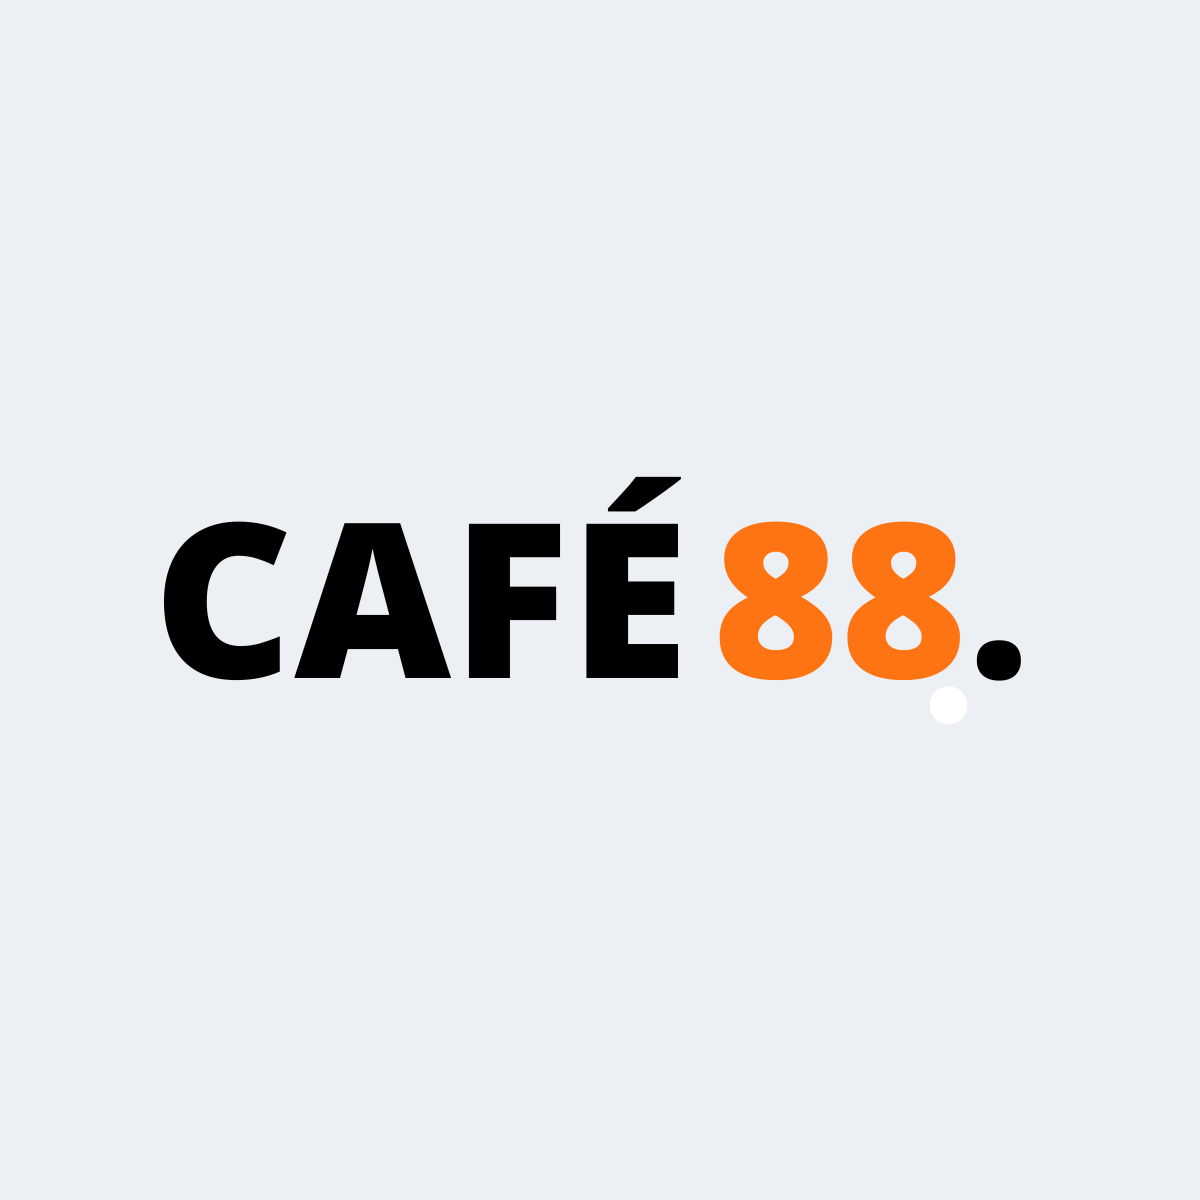 Café 88